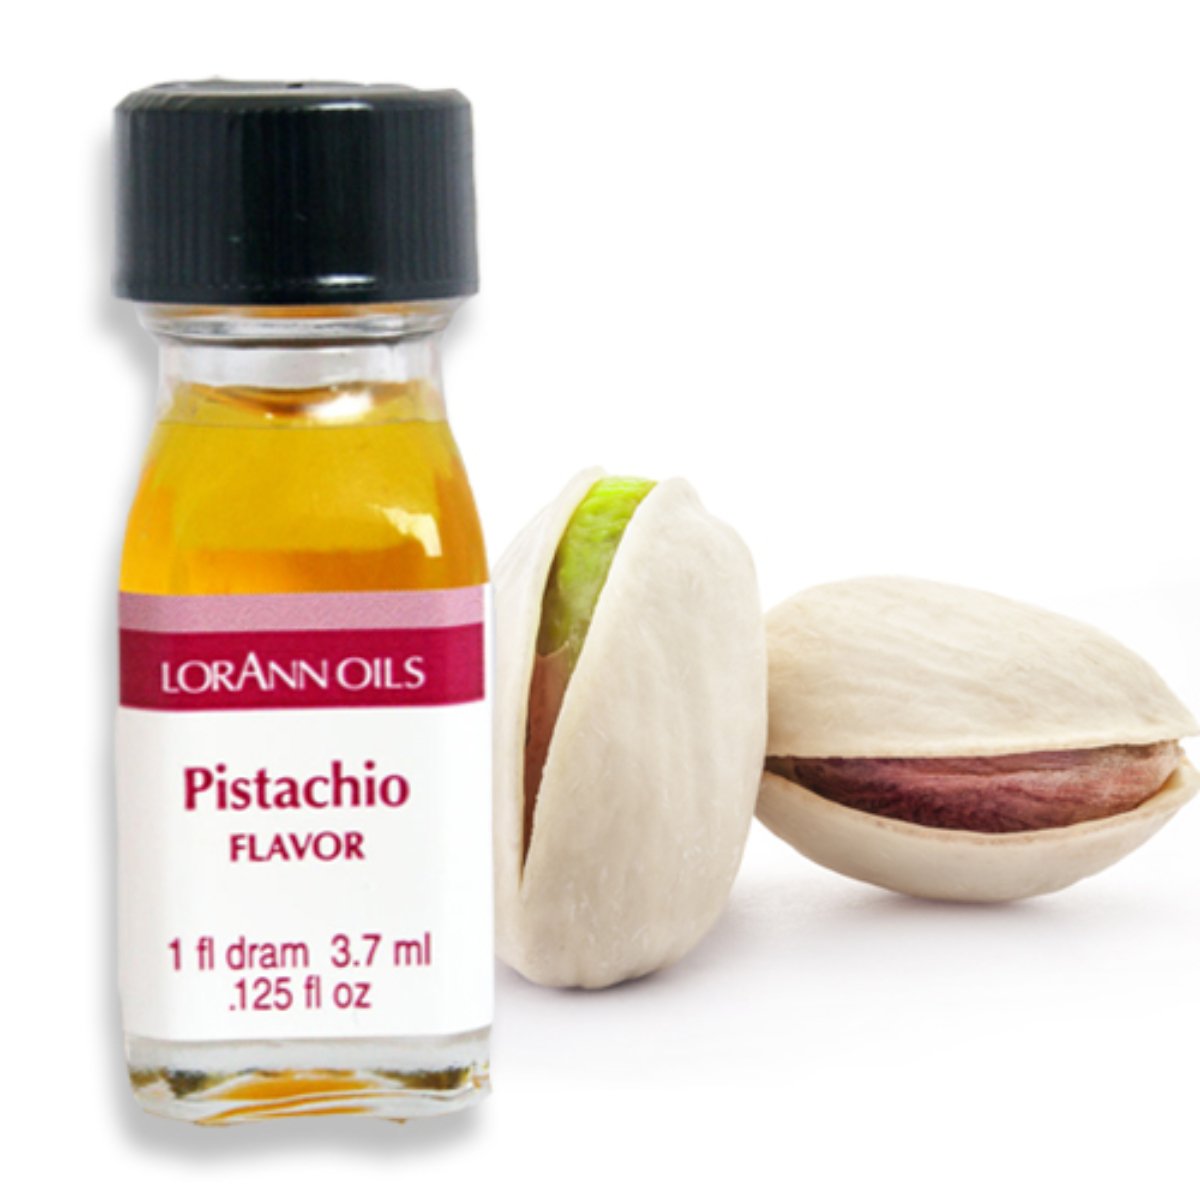 Pistachio Flavor 1 Dram - Bake Supply Plus